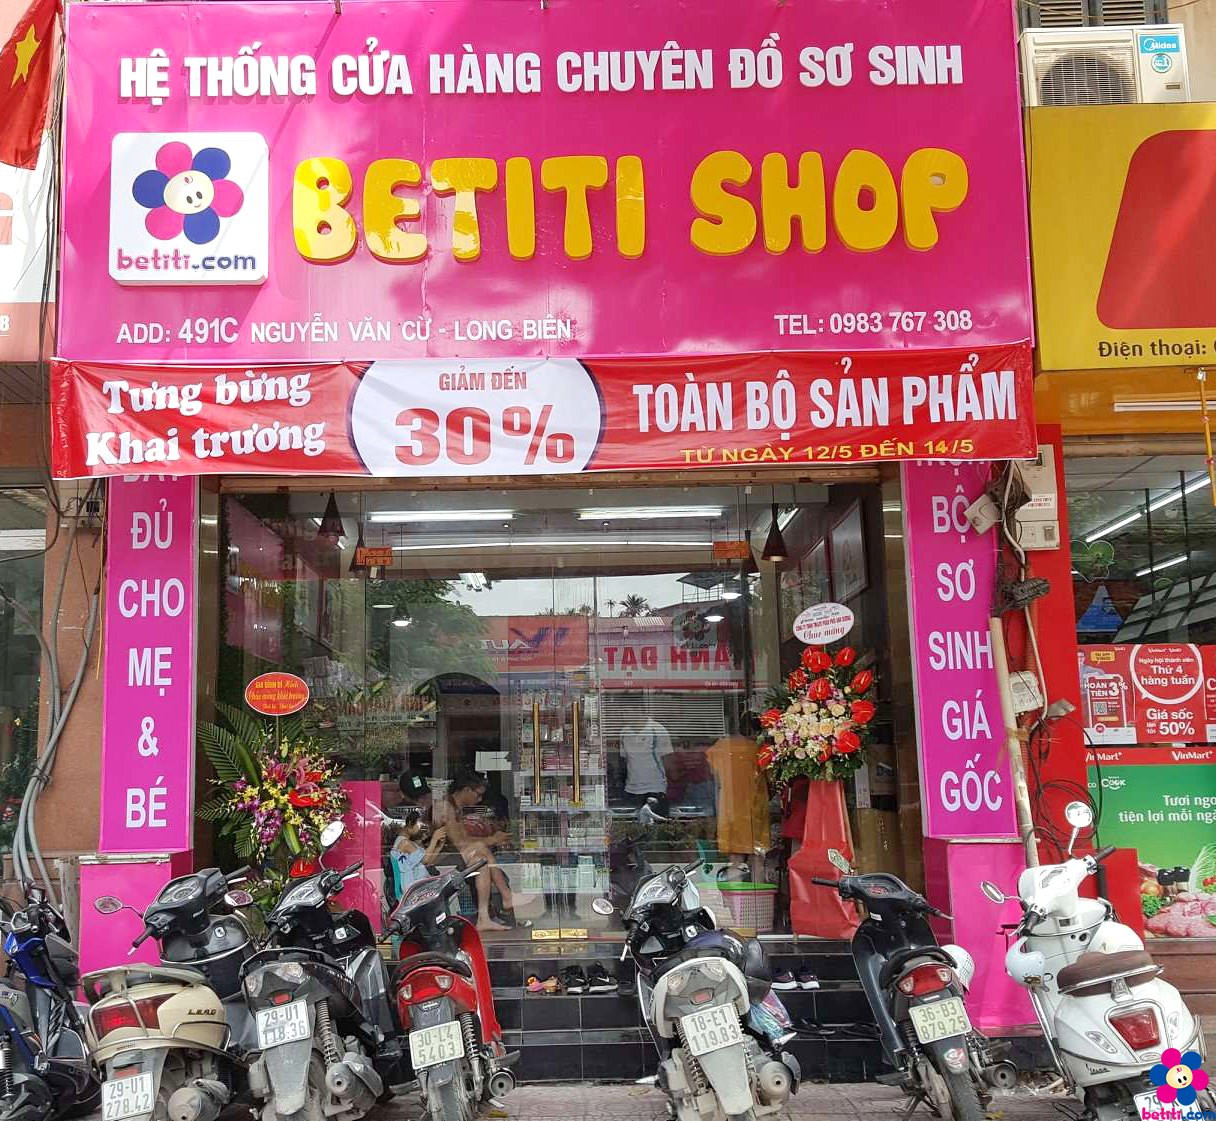 Betiti Shop Long Biên Số 491C Nguyễn Văn Cừ, Phường Ngọc Lâm, Quận Long Biên, Thành Phố Hà Nội 0325462404 - 0983767308